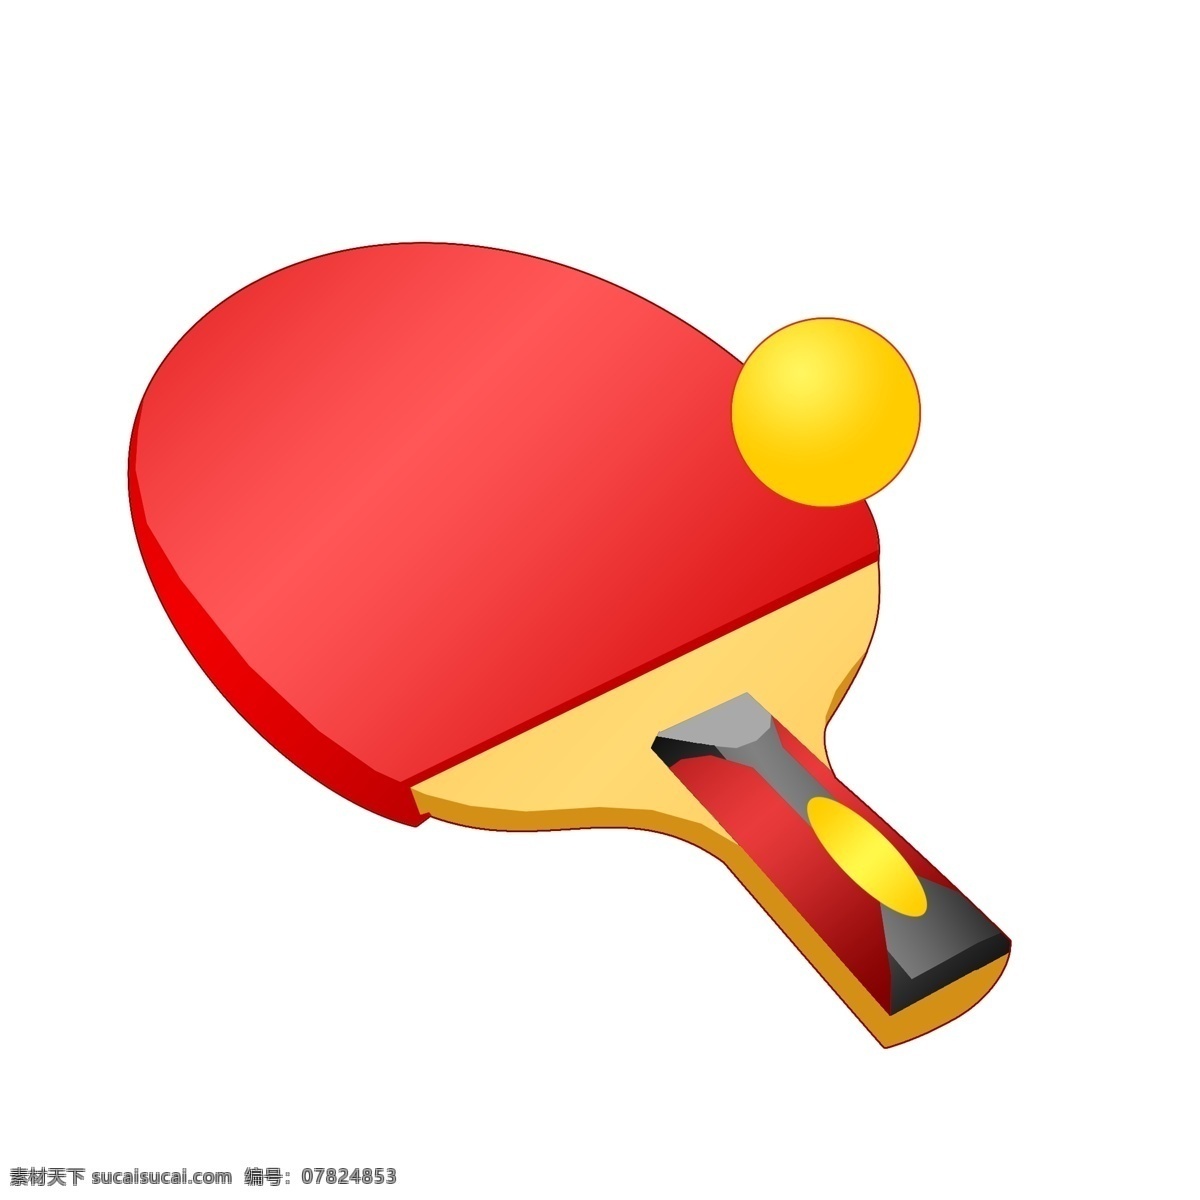 红色 乒乓球拍 插画 手绘乒乓球拍 黄色的乒乓球 圆形乒乓球 乒乓球拍装饰 乒乓球拍插画